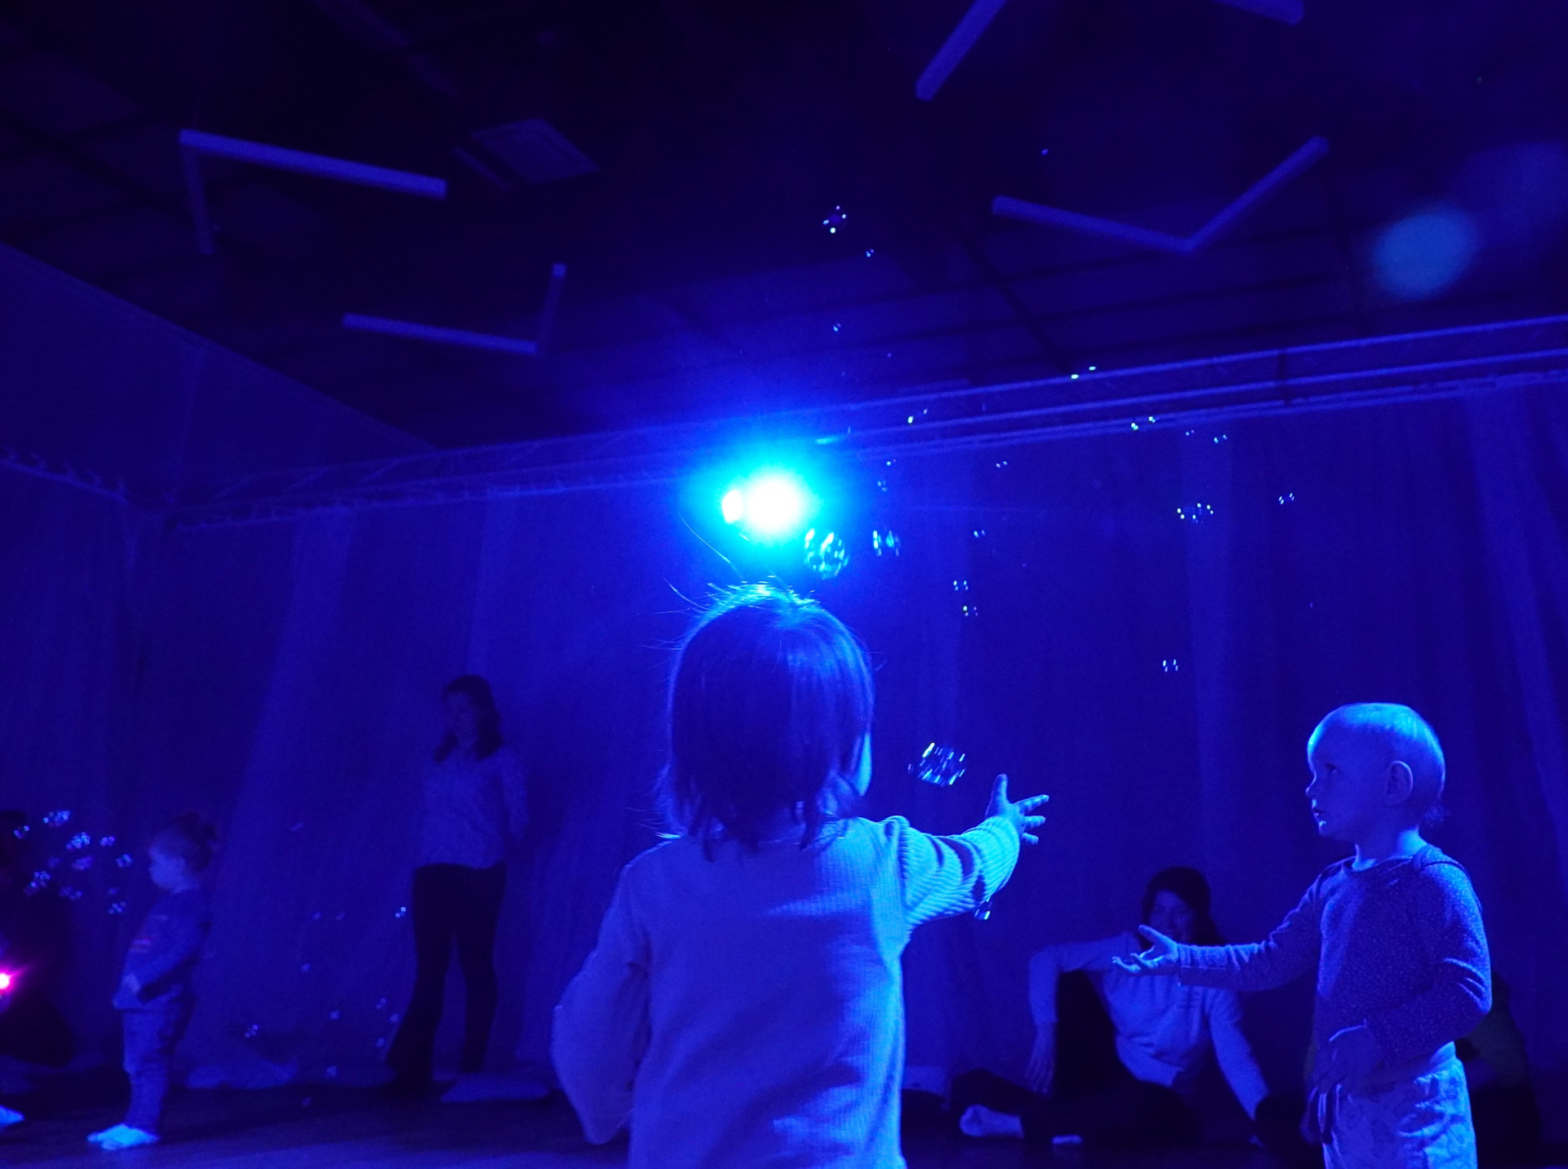 Małe dzieci bawią się bańkami mydlanymi w wyciemnionej przestrzeni, którą oświetla tylko jeden niebieski reflektor.